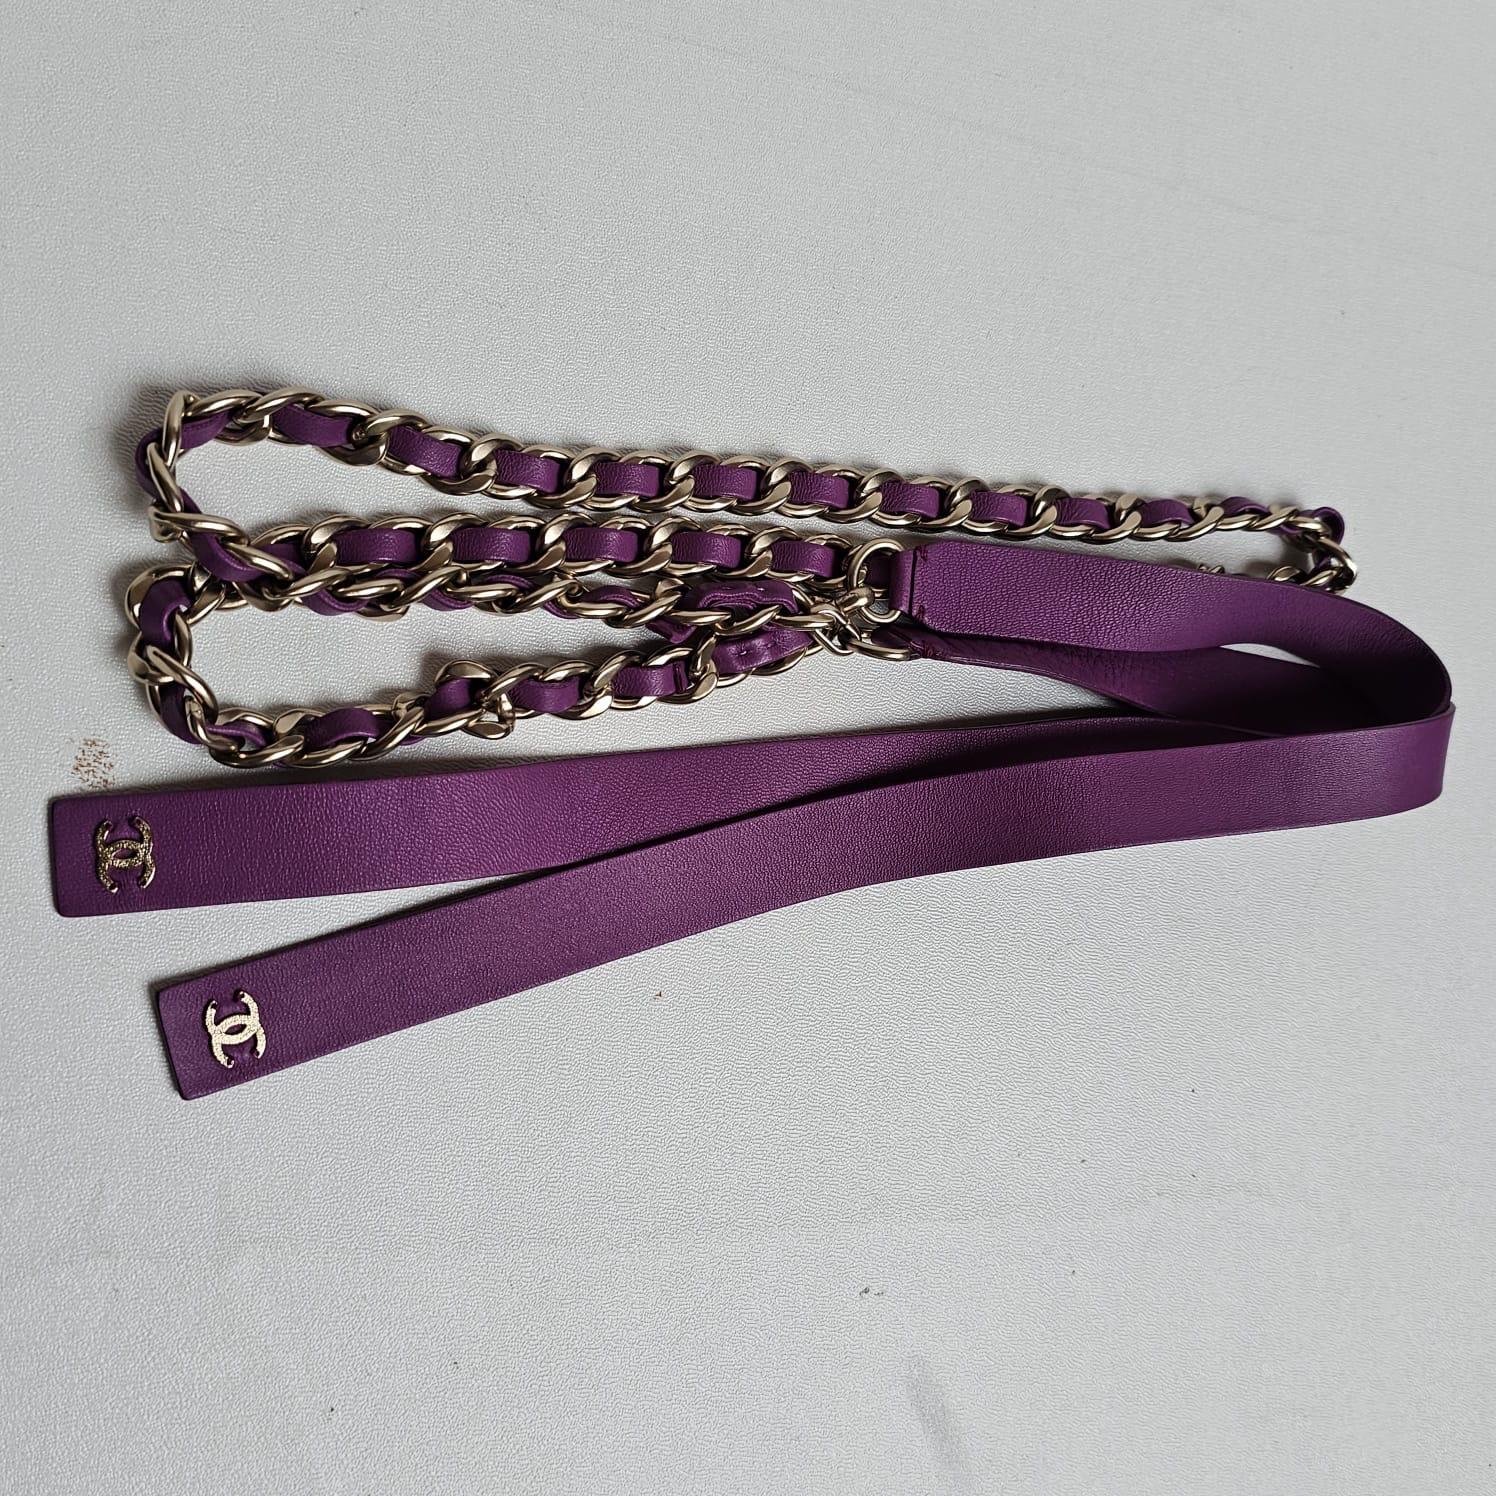 Magnifique ceinture en chaîne de couleur violette. Quincaillerie en or clair. D'une collection récente. Dans l'ensemble en très léger état d'usure, avec de très légères éraflures sur le cuir. La longueur est de 85 cm. Livré avec un sac à poussière.